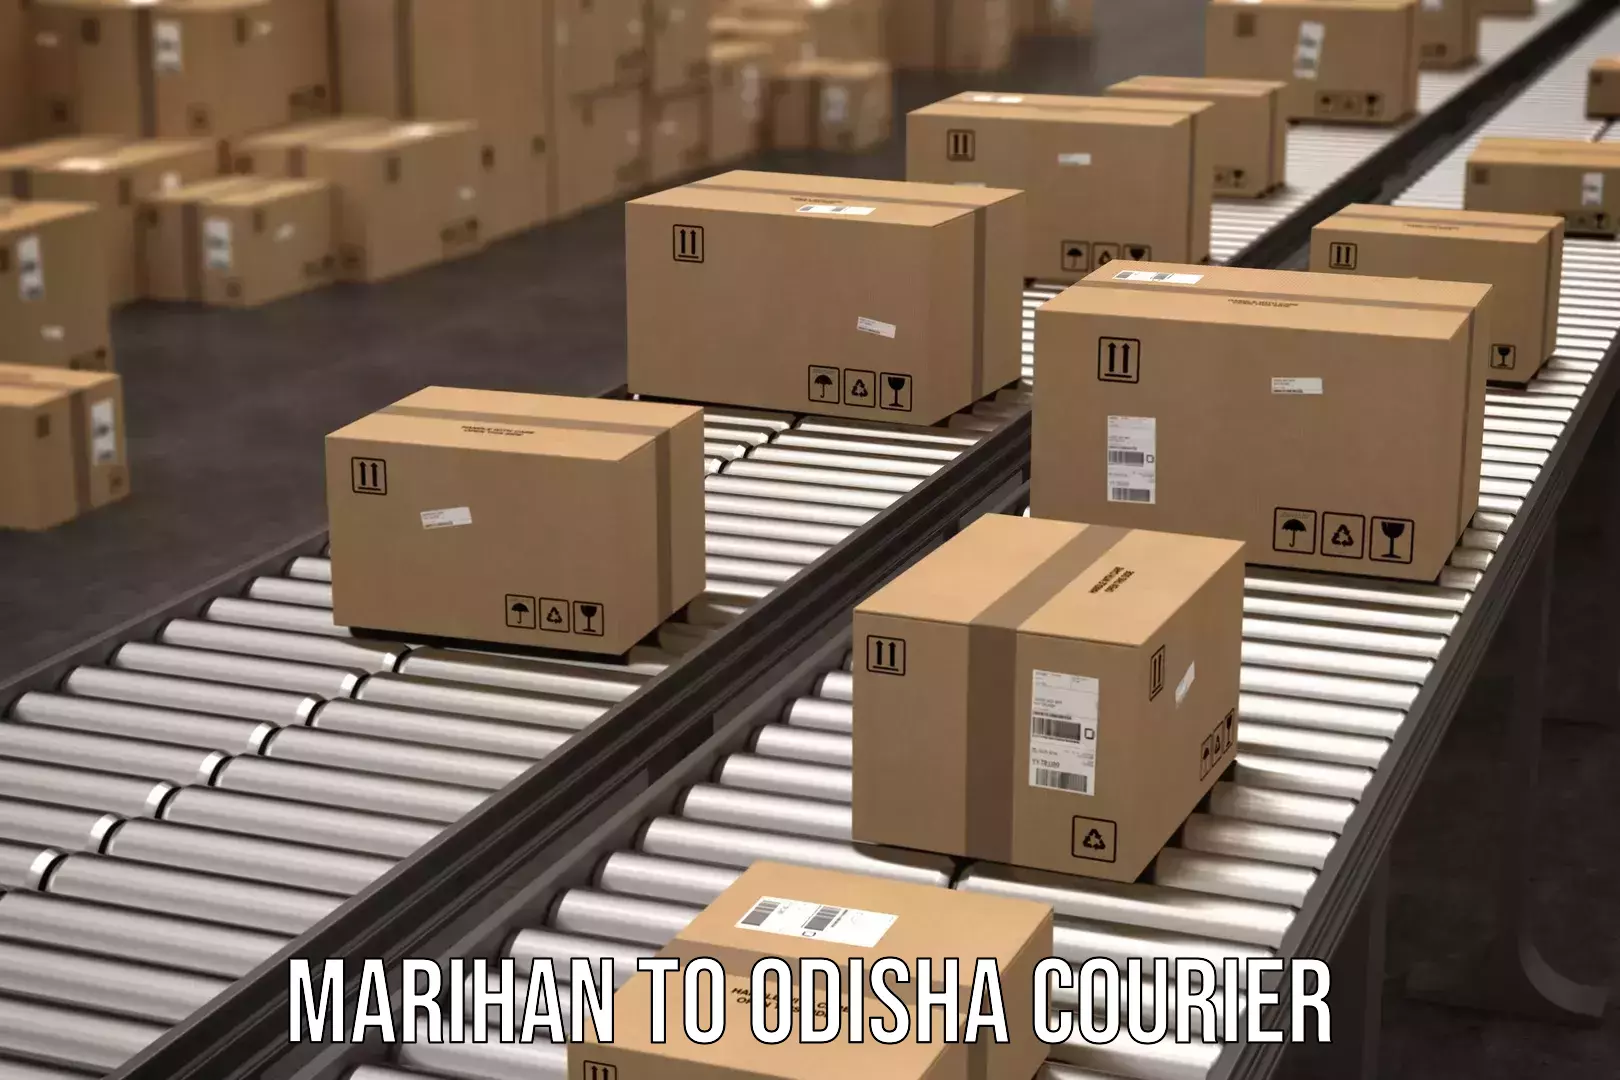 Courier service partnerships Marihan to Sambalpur